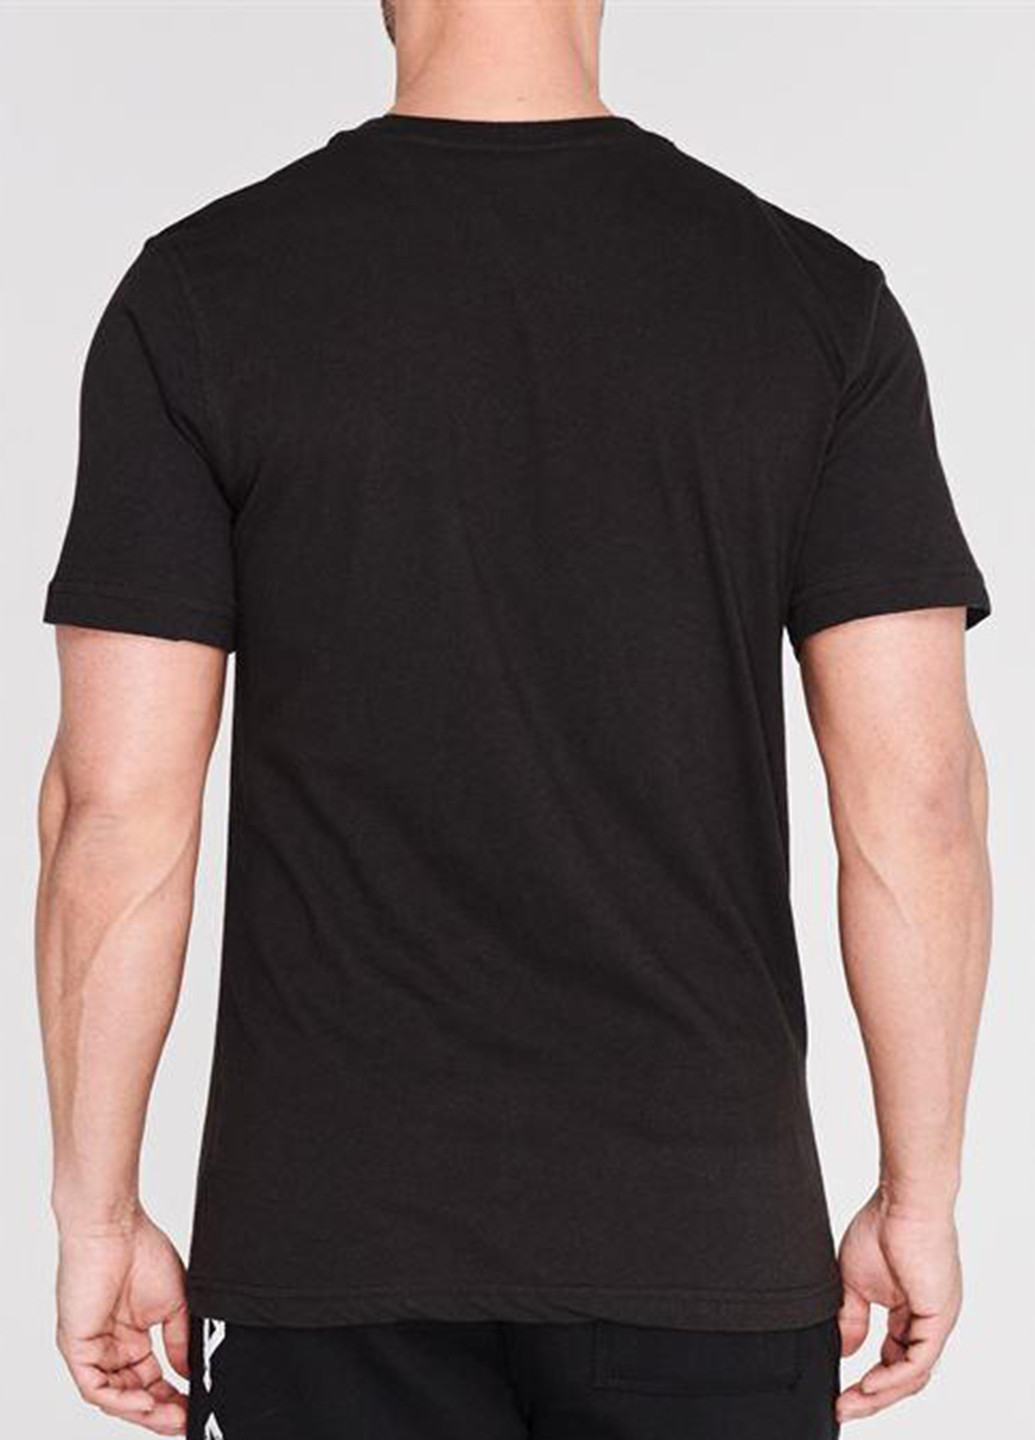 Черно-белая футболка Tapout